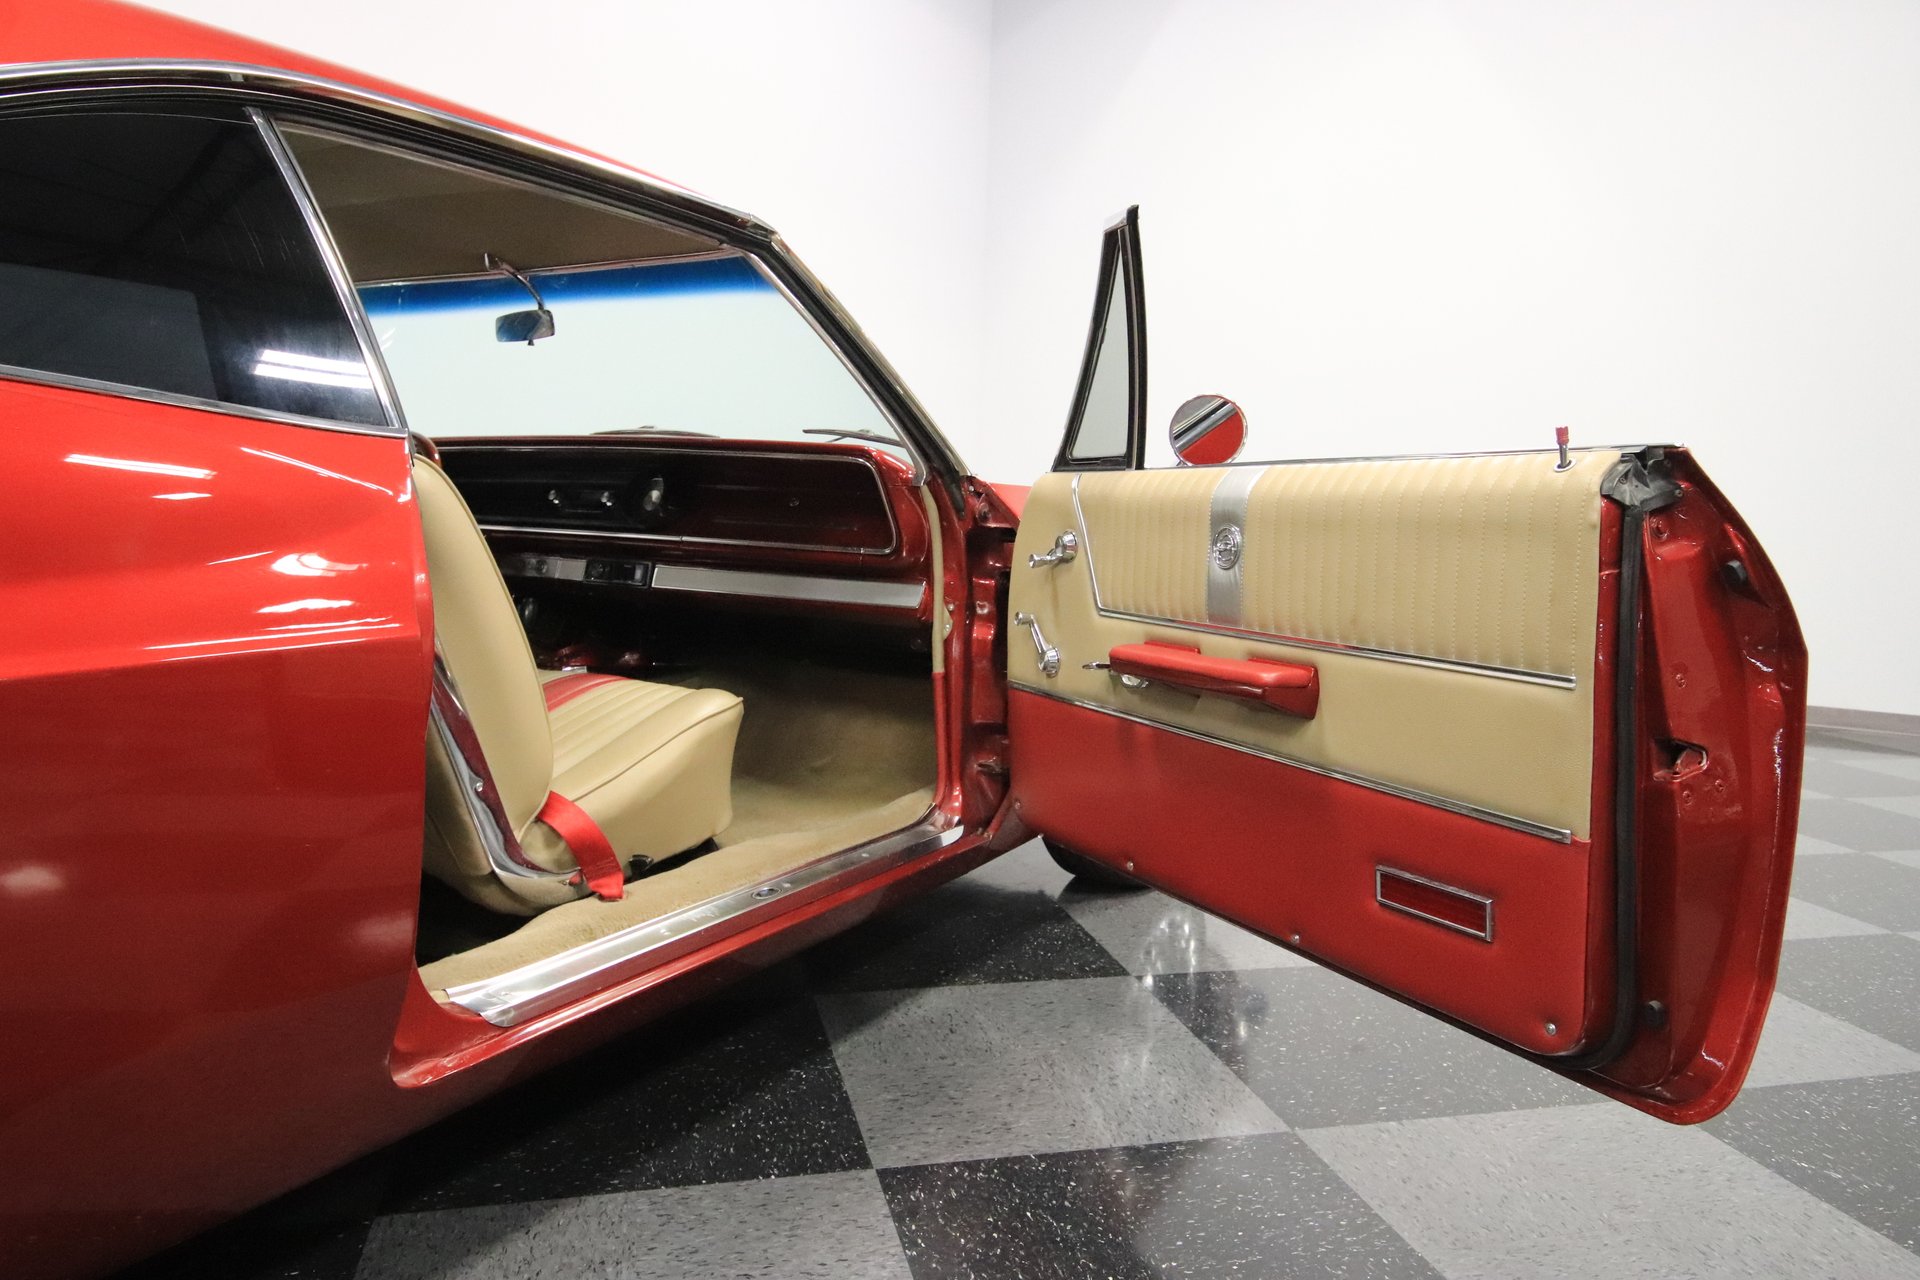 1965 Chevrolet Impala Streetside Classics The Nation S